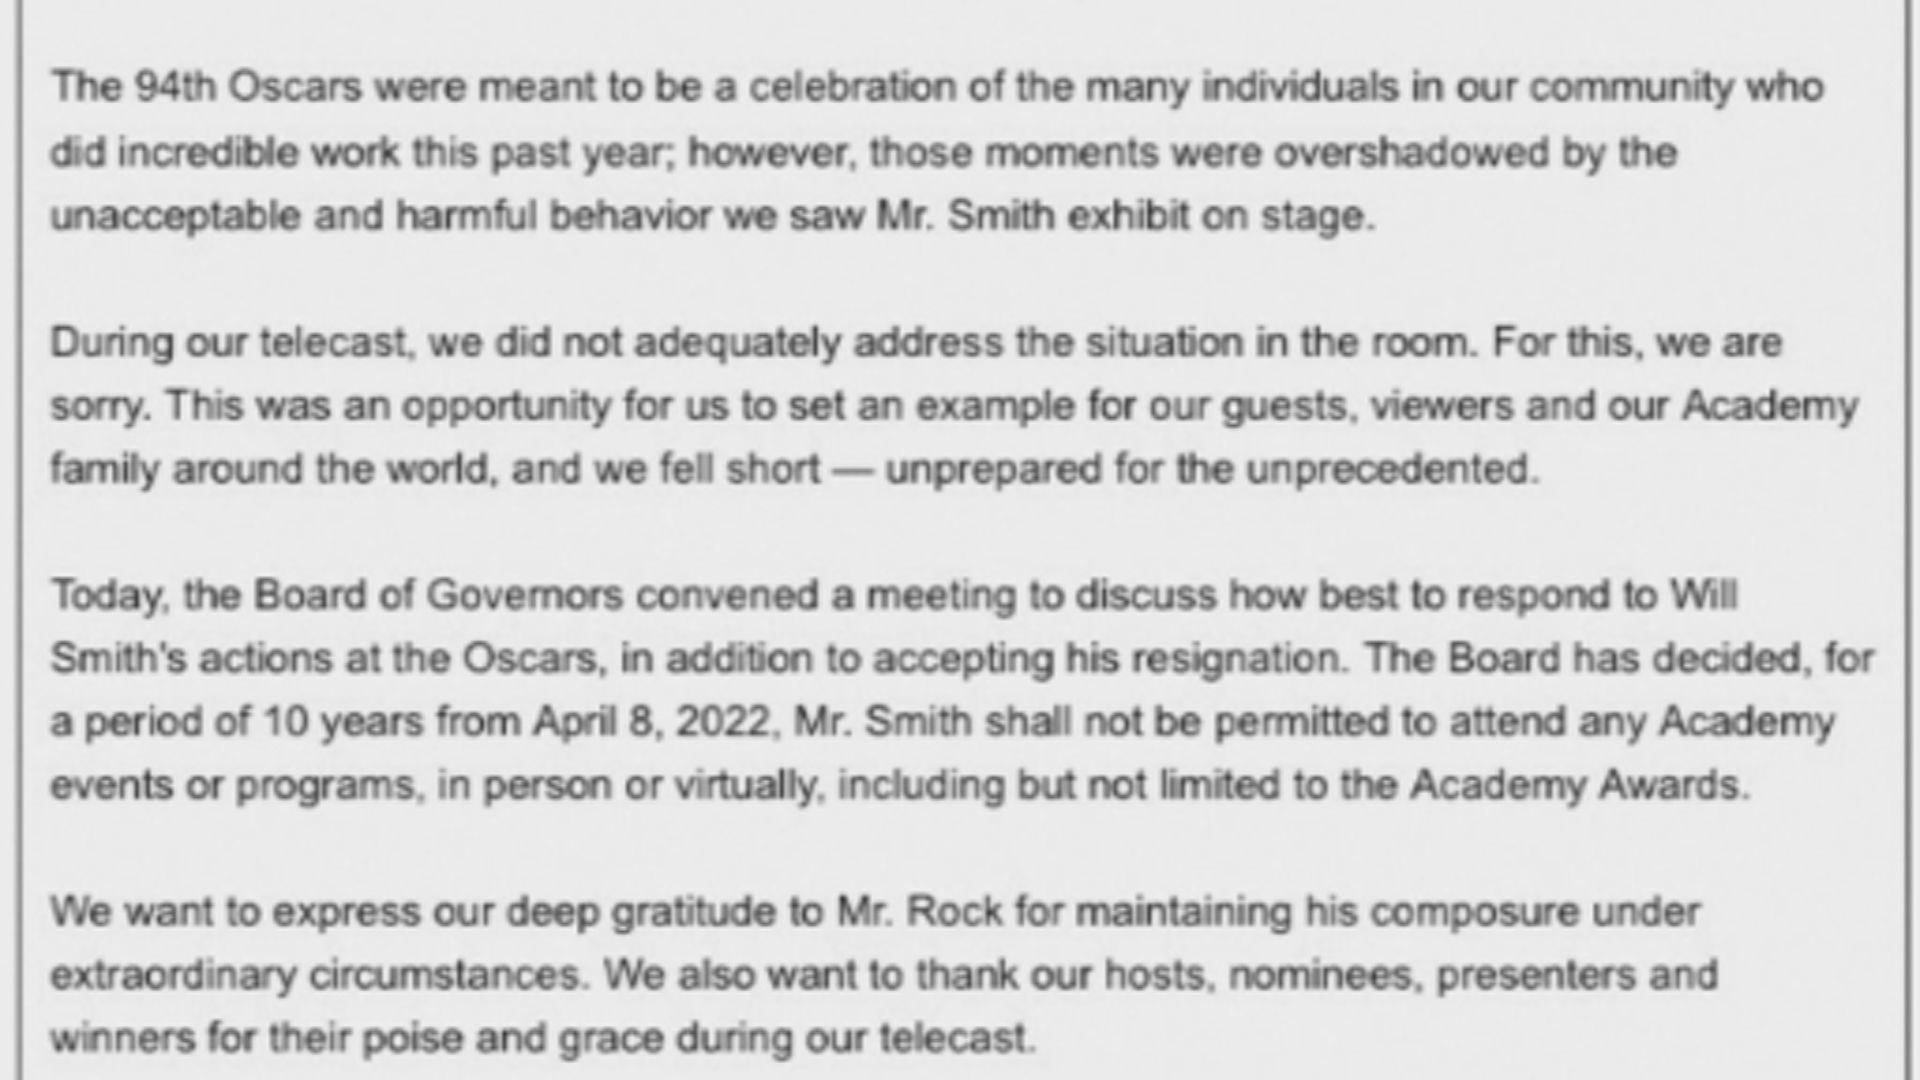 韋史密夫被禁止出席奧斯卡頒獎禮10年